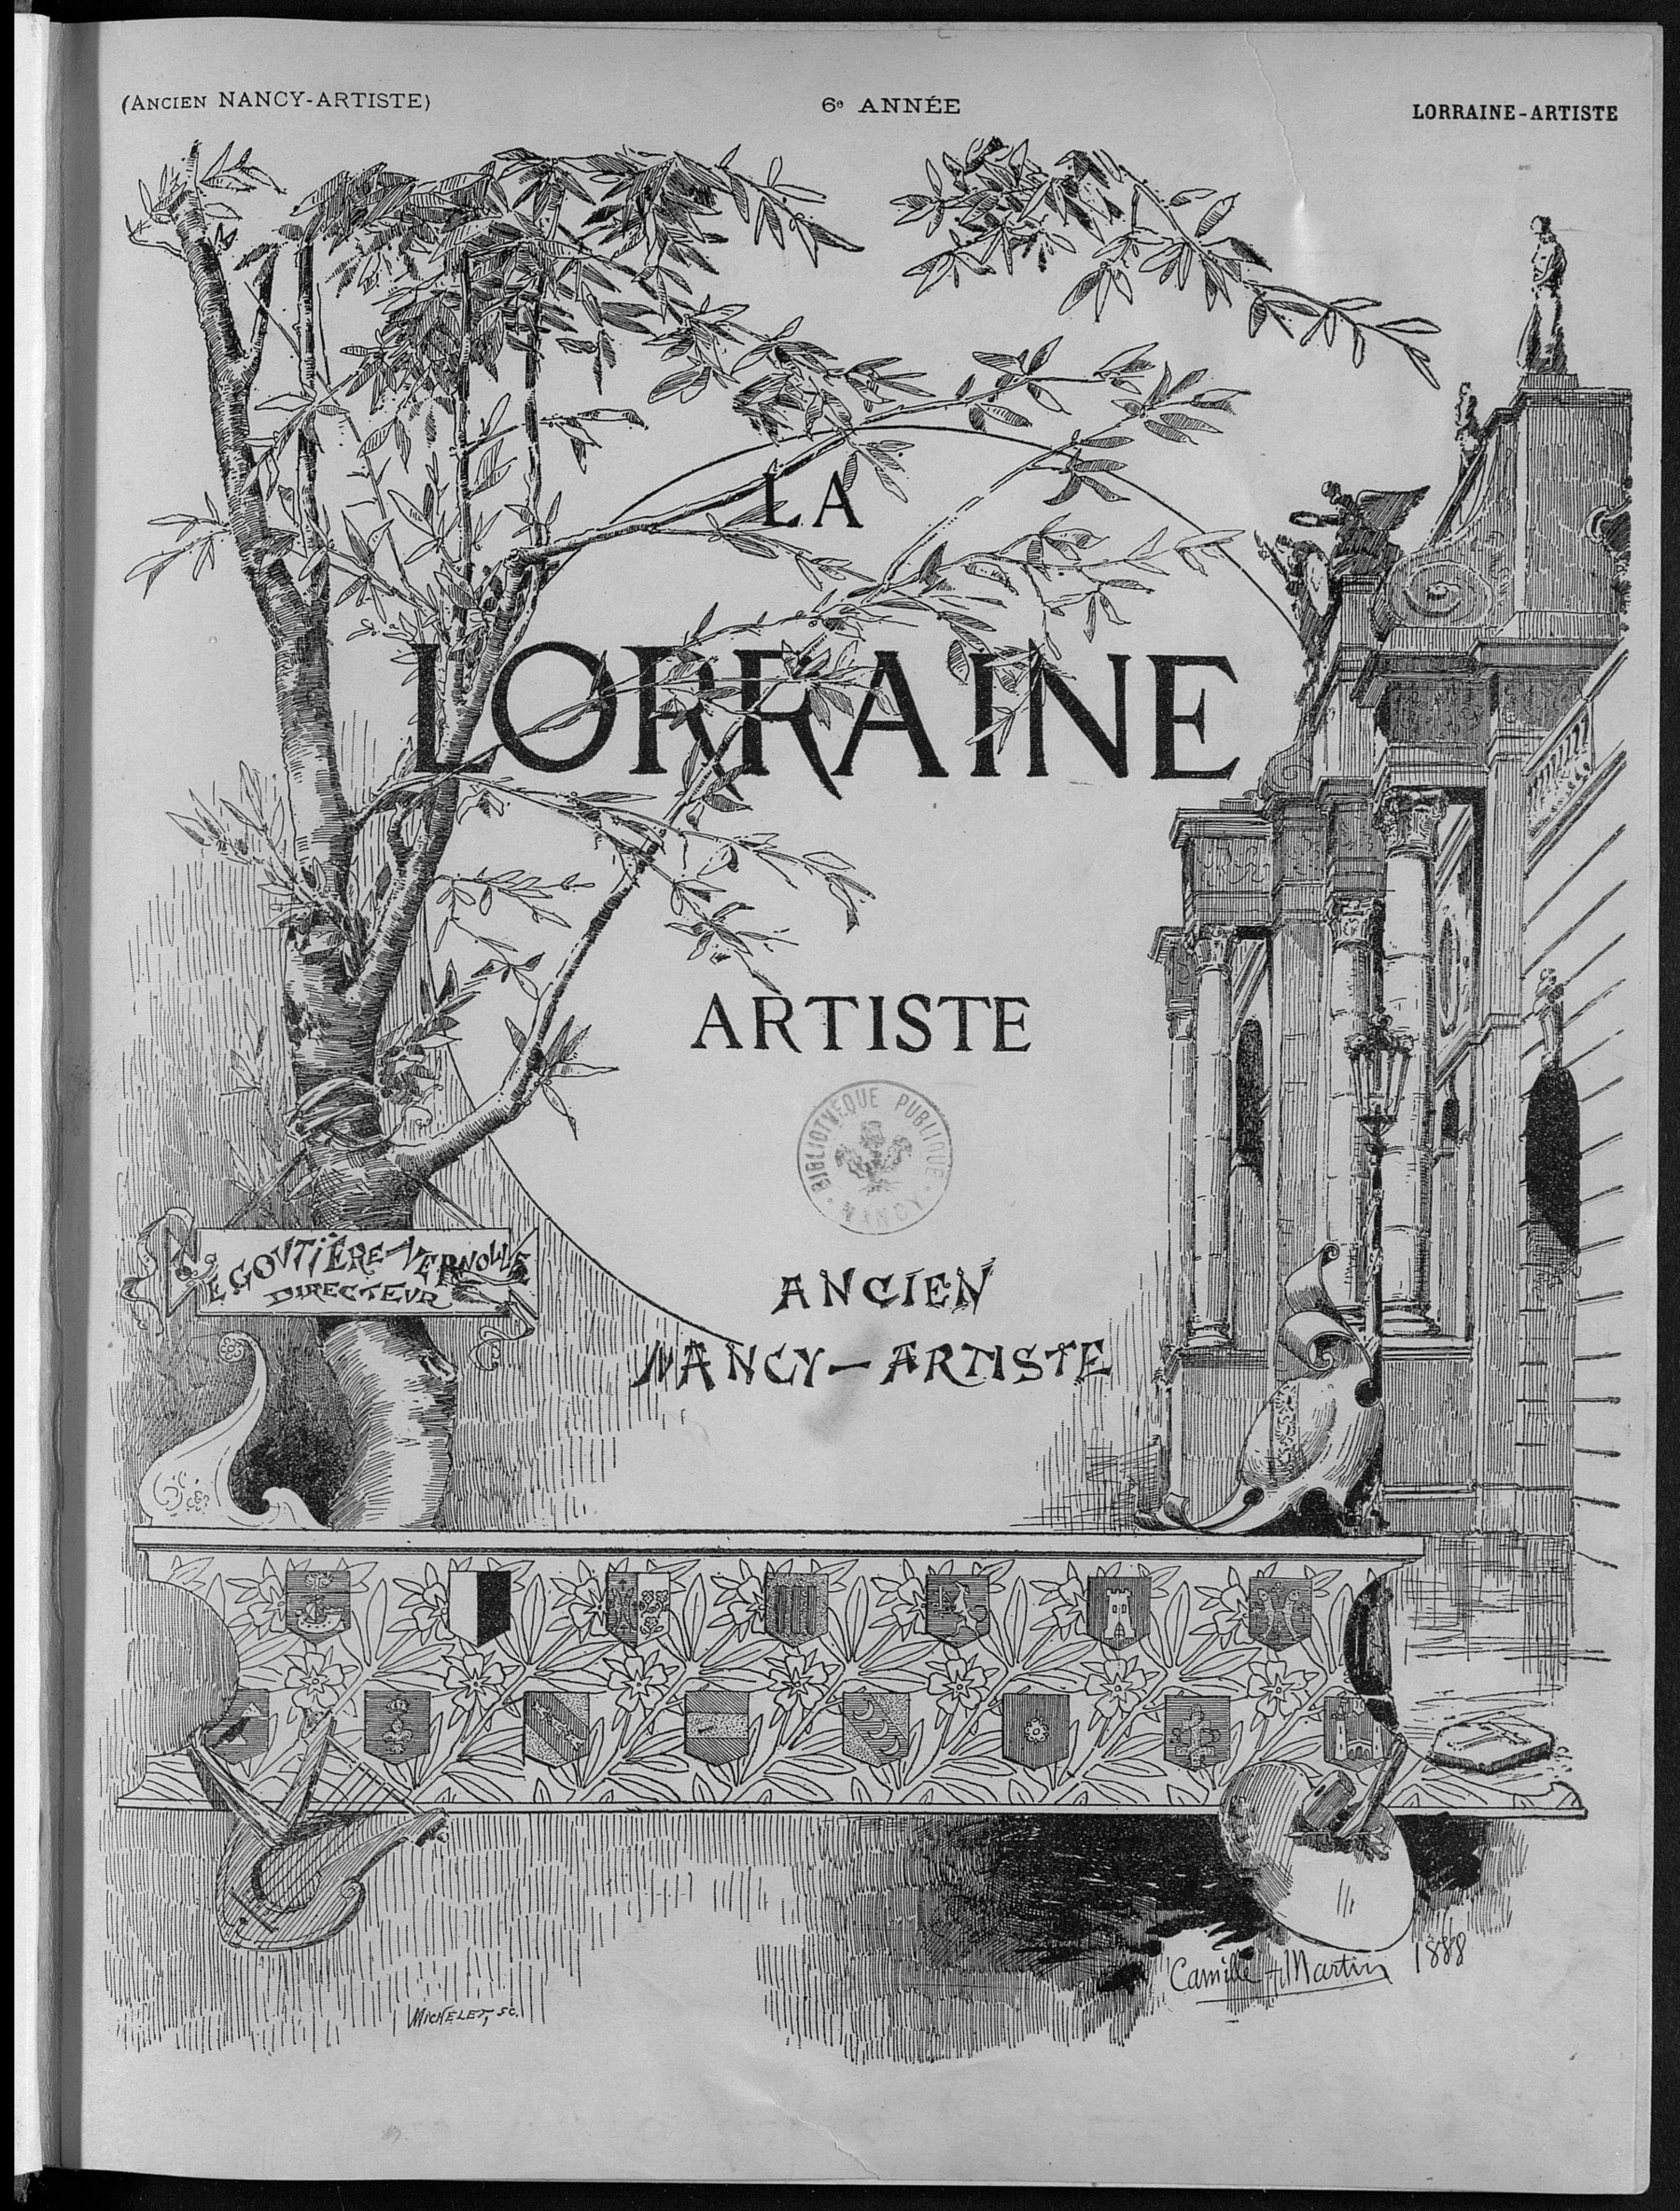 Contenu du La Lorraine artiste